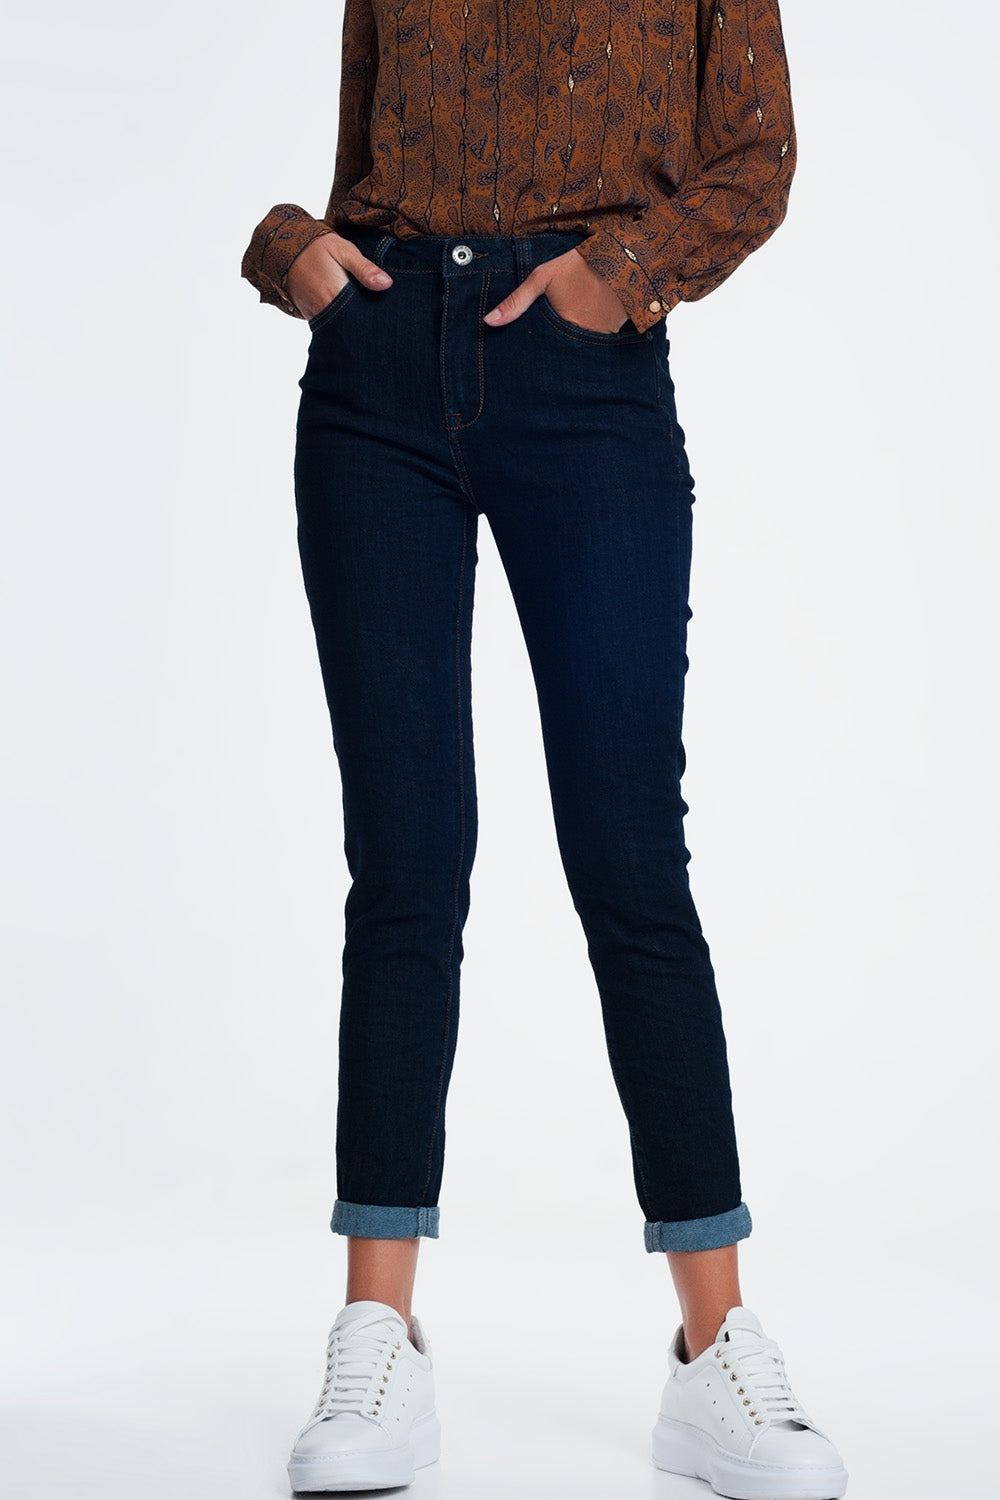 classic  jean in blueJeans